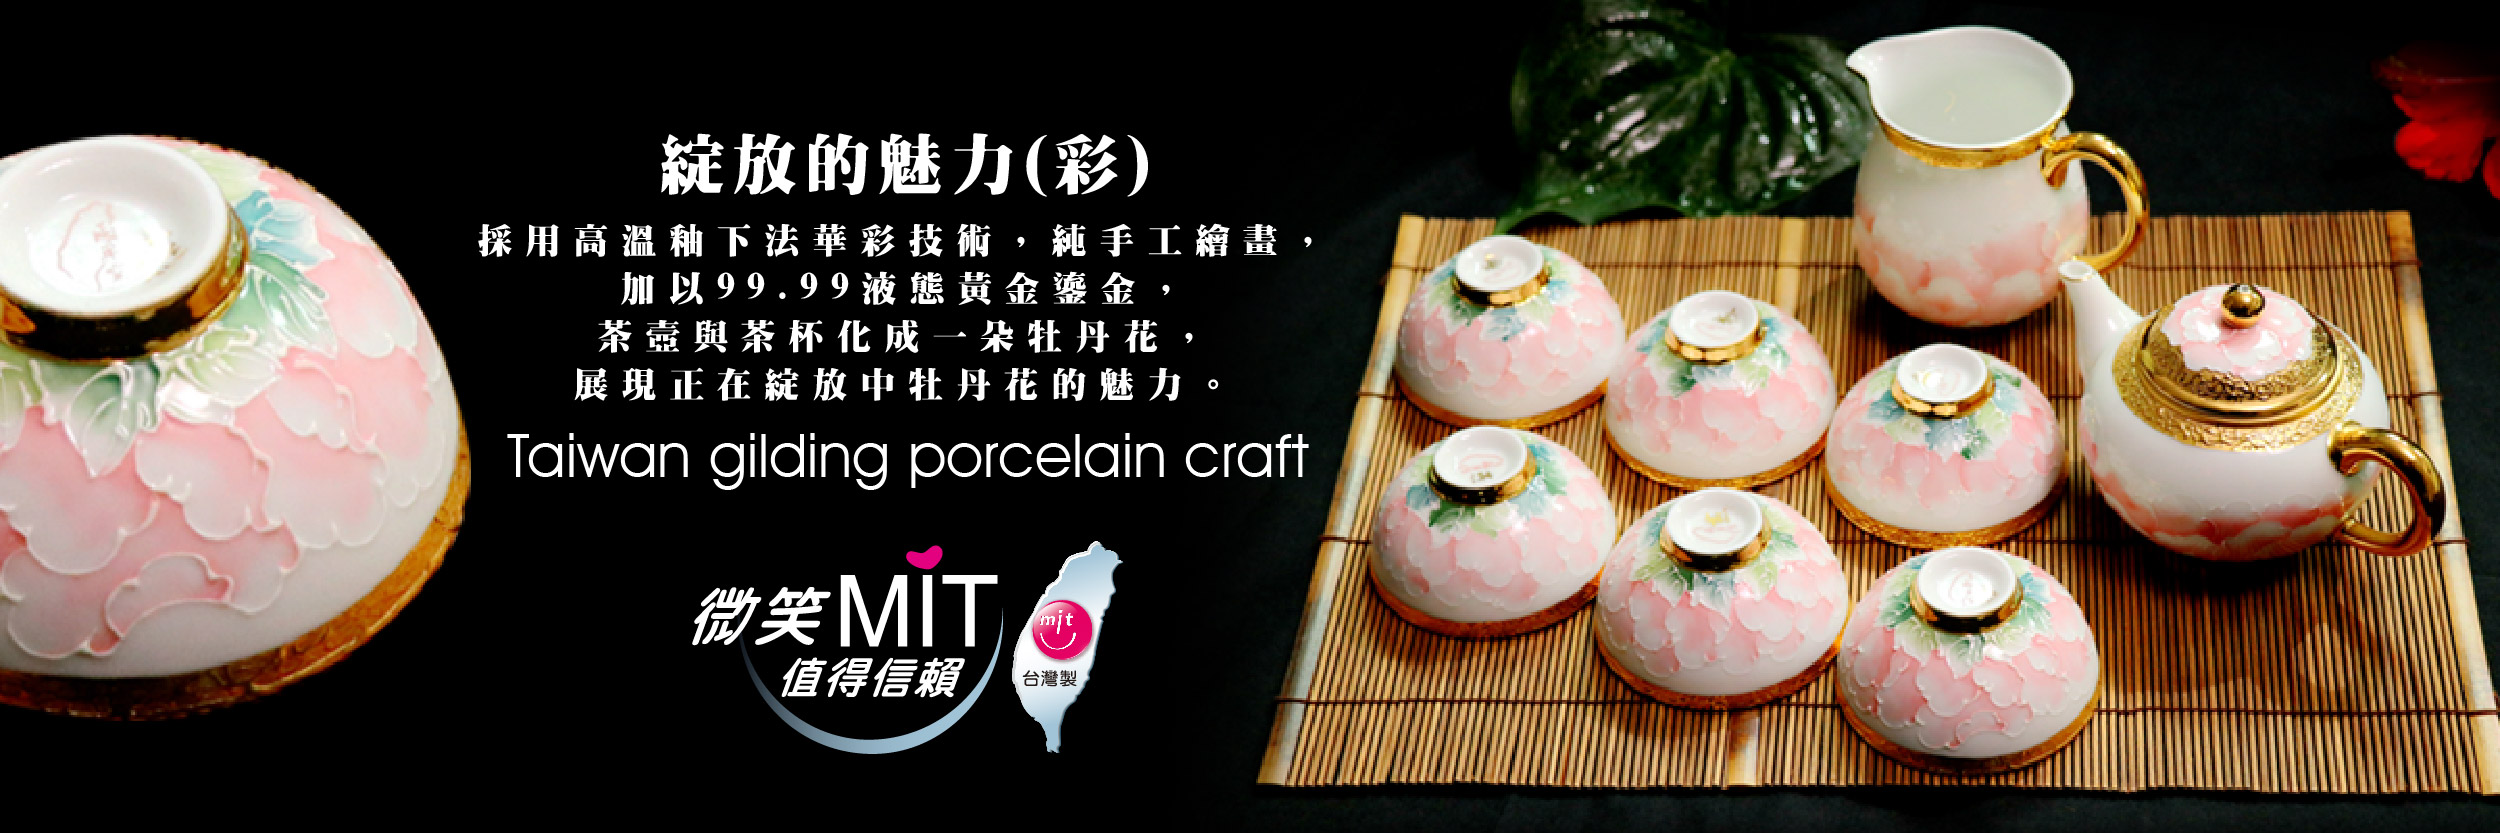 【微笑台灣MIT認證金選】法華彩 綻放的魅力(彩) Taiwan gilding porcelain craft